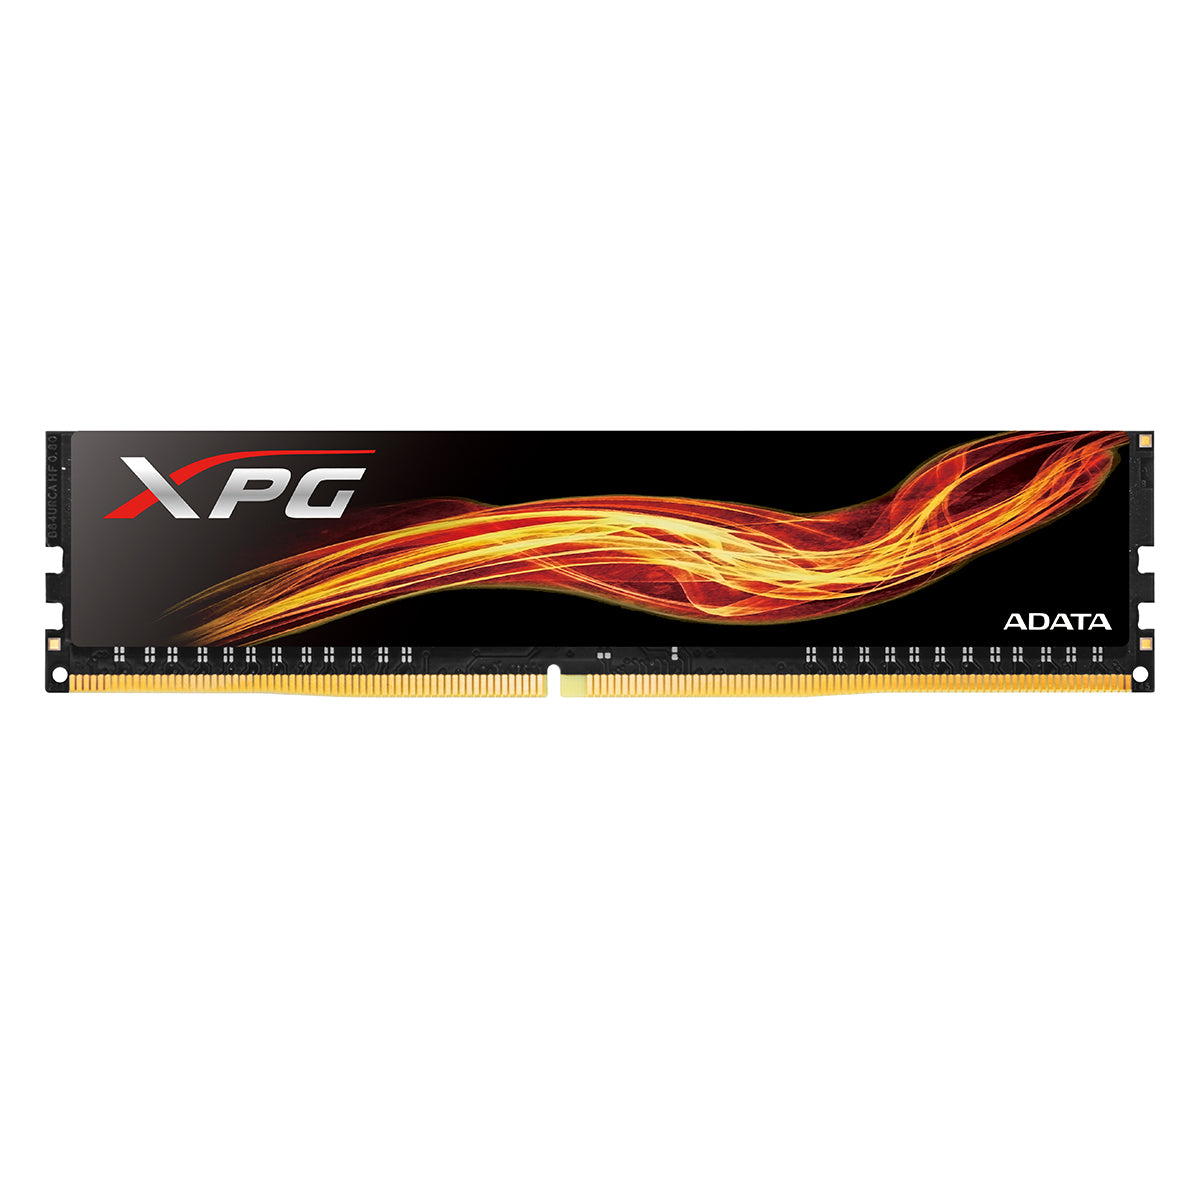 XPG Flame 2666MHz RAM DDR4 Desktop Memory